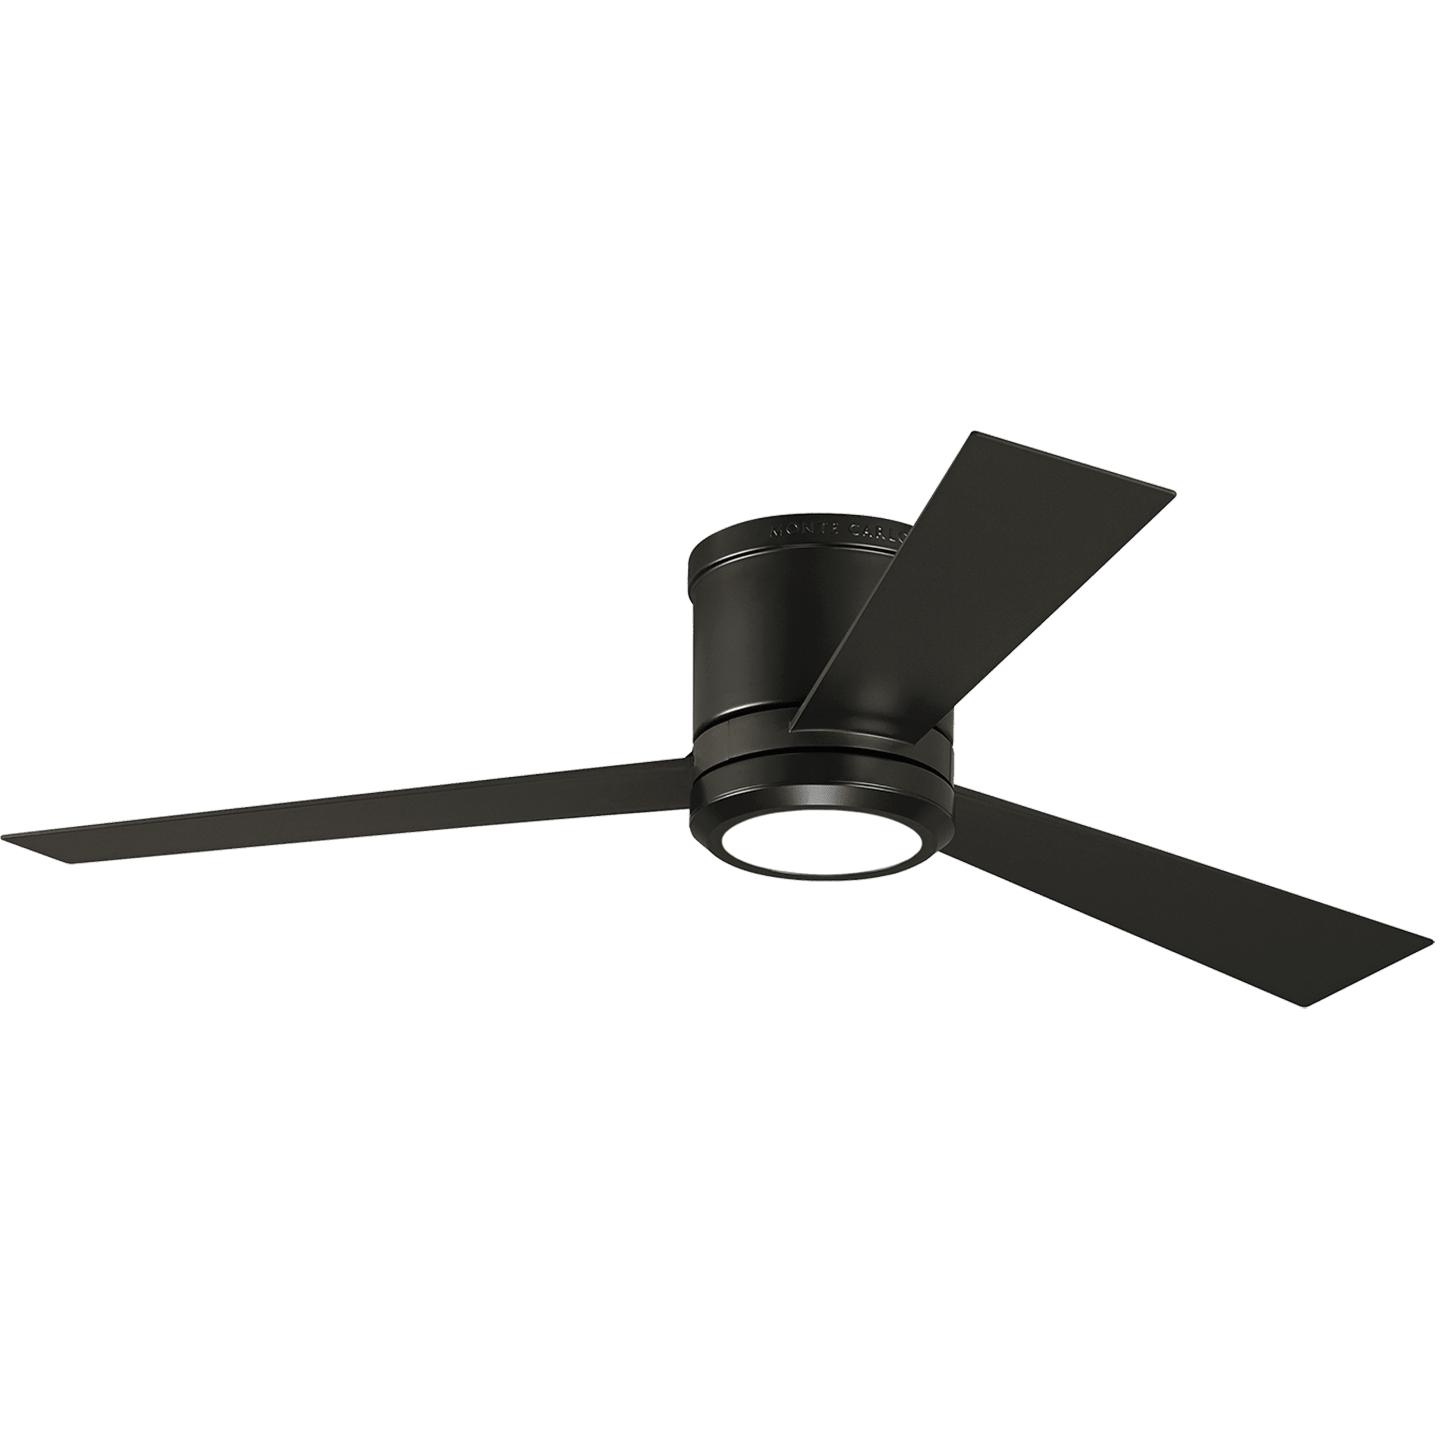 Купить Потолочный вентилятор Clarity 52" LED Ceiling Fan в интернет-магазине roooms.ru